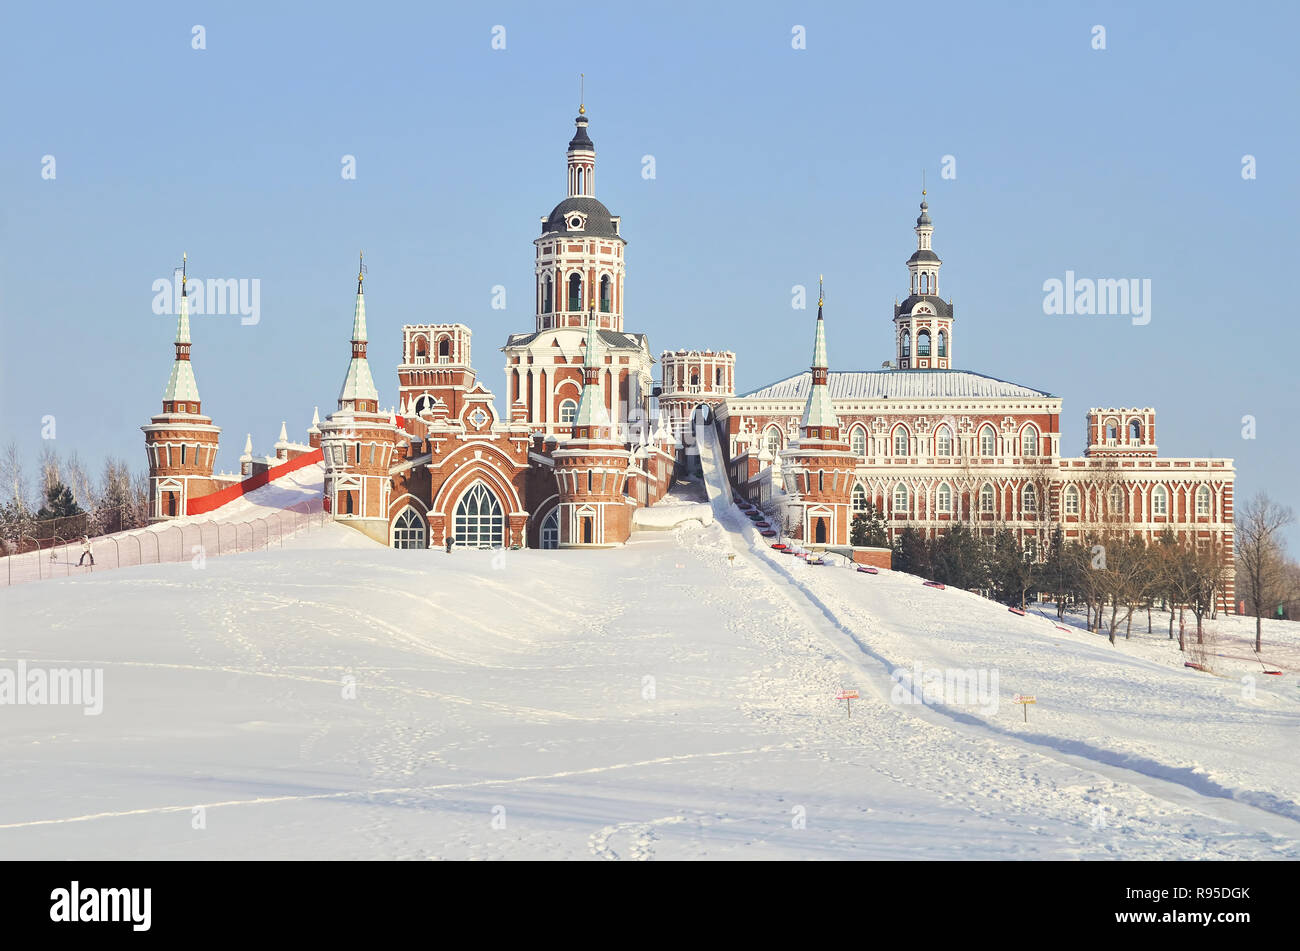 Russian style architecture castle in Volga Manor, Harbin Stock Photo